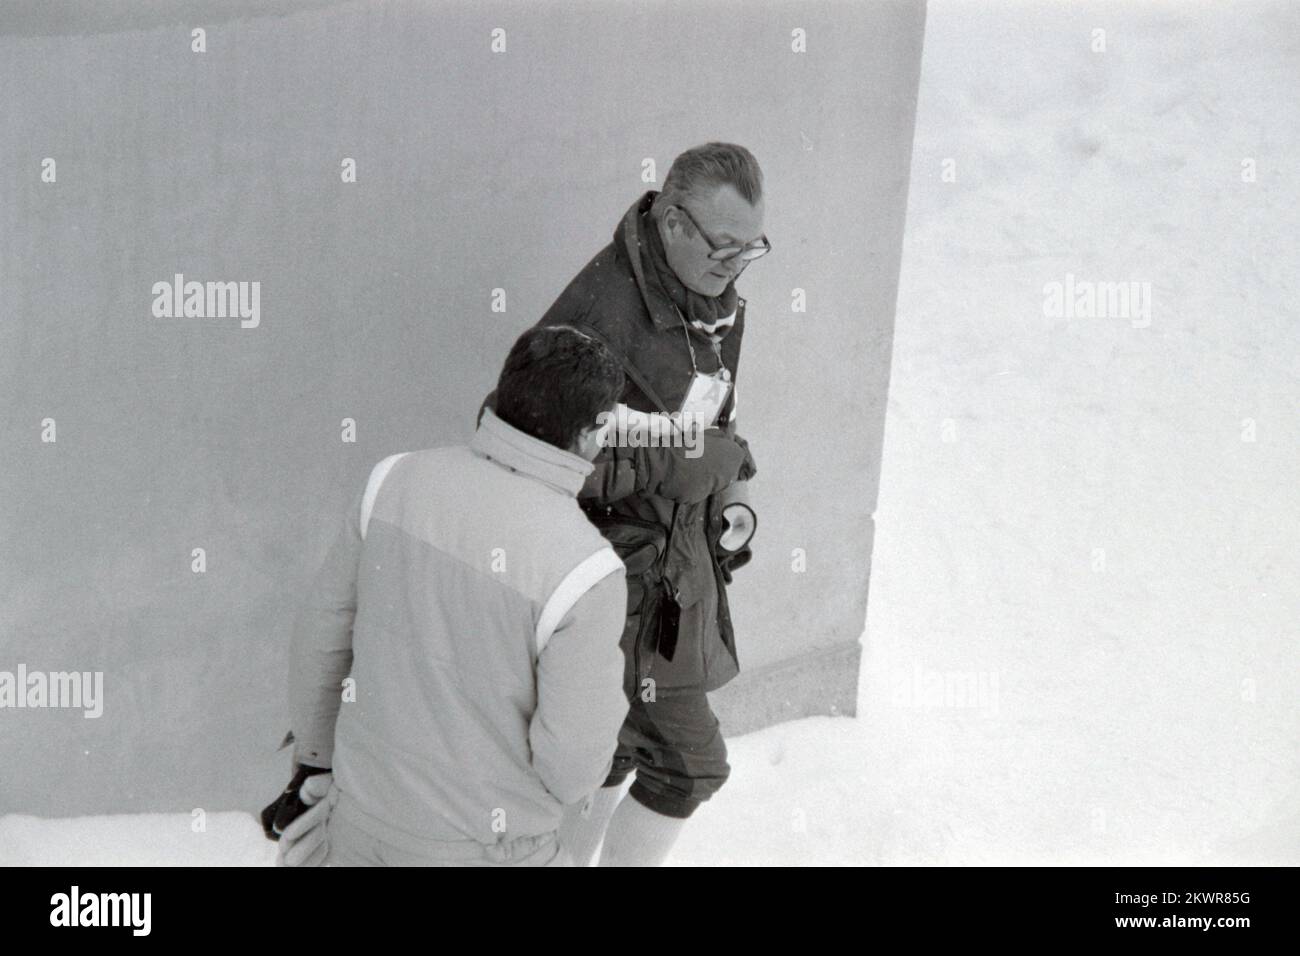 Februar 1984, Sarajewo, Bosnien und Herzegowina - 14. Olympische Winterspiele. König Olaf V von Norwegen besuchte norwegische Skispringer, während sie trainierten. Foto: Ante Jelavic/HaloPix/PIXSELL Stockfoto